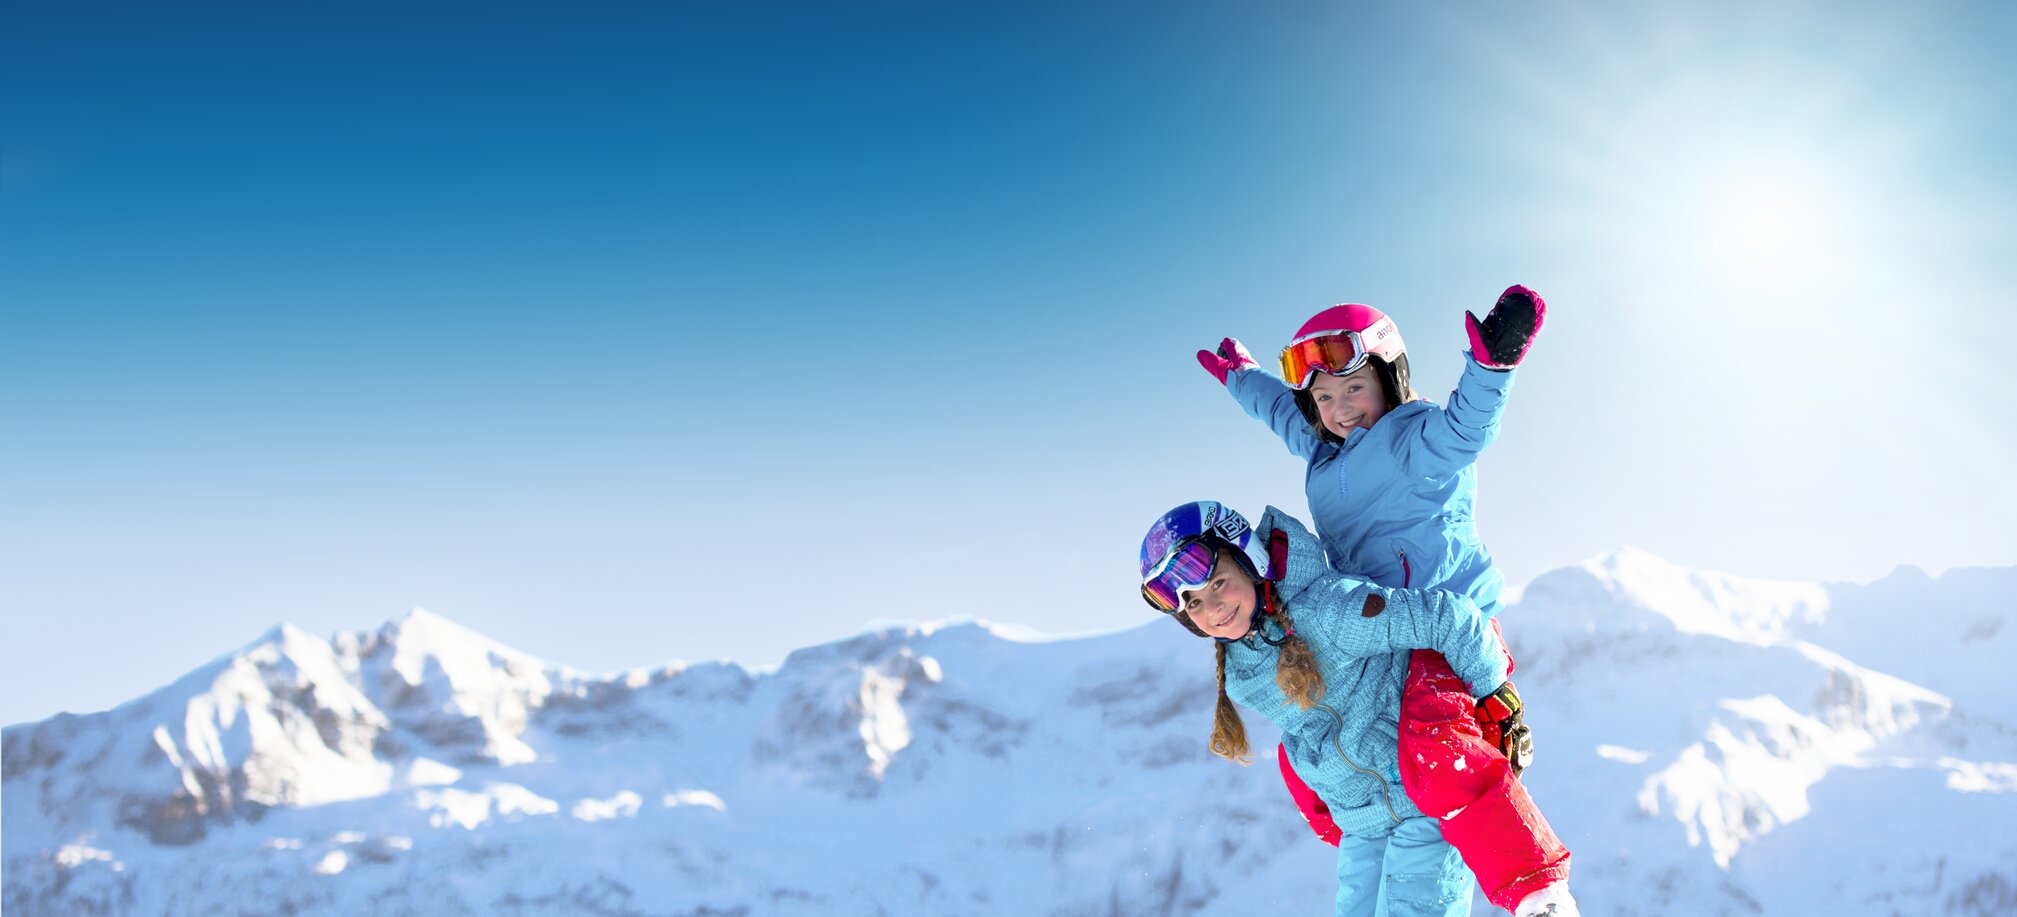 Spaß auf den besten Pisten und Anlagen für Kinder in Ski amadé